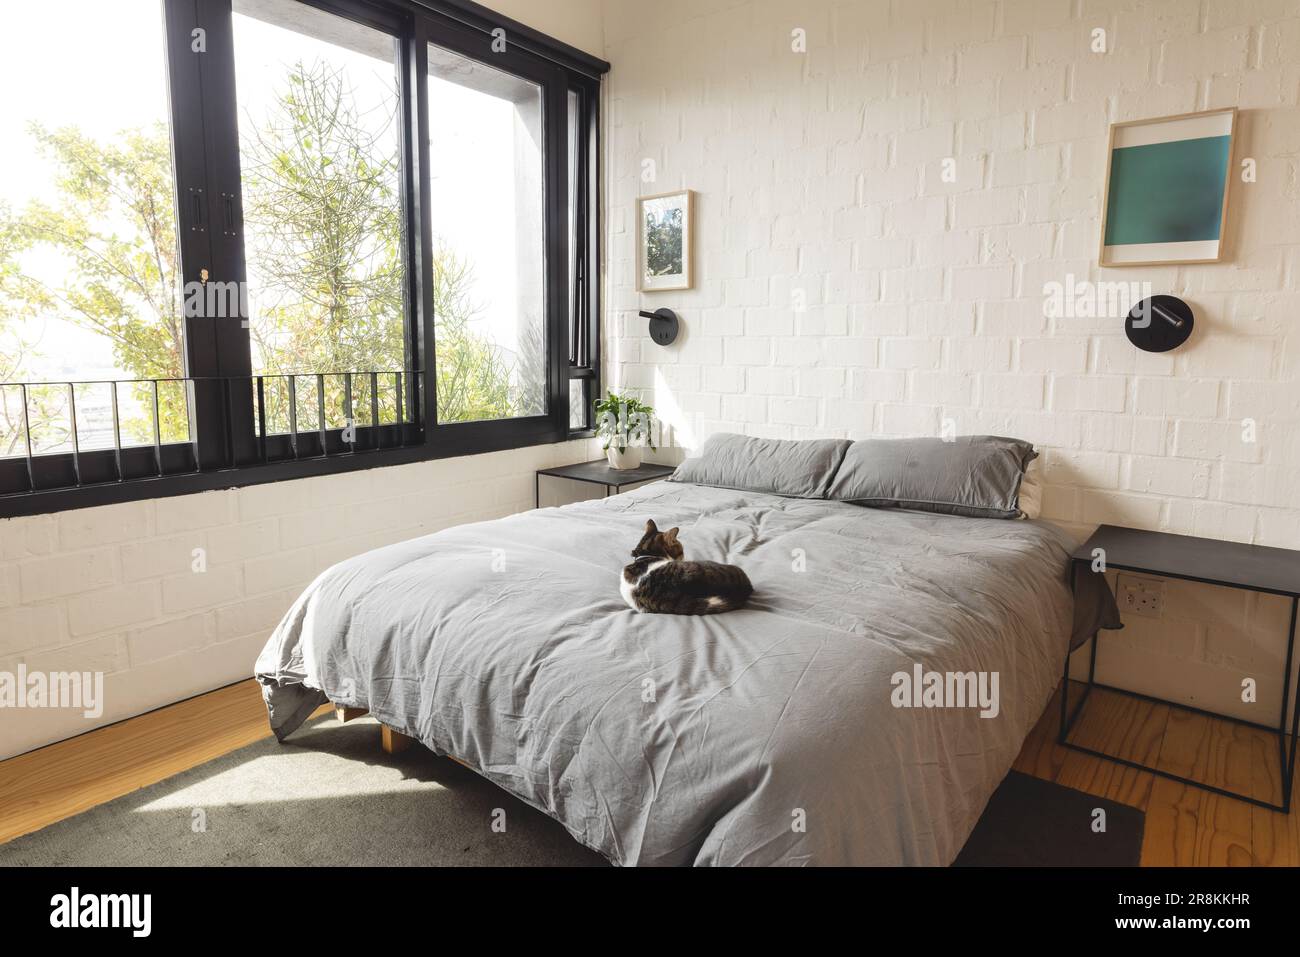 Blick auf die helle, moderne Innenausstattung des Schlafzimmers mit Katze auf dem Doppelbett und großen Fenstern Stockfoto